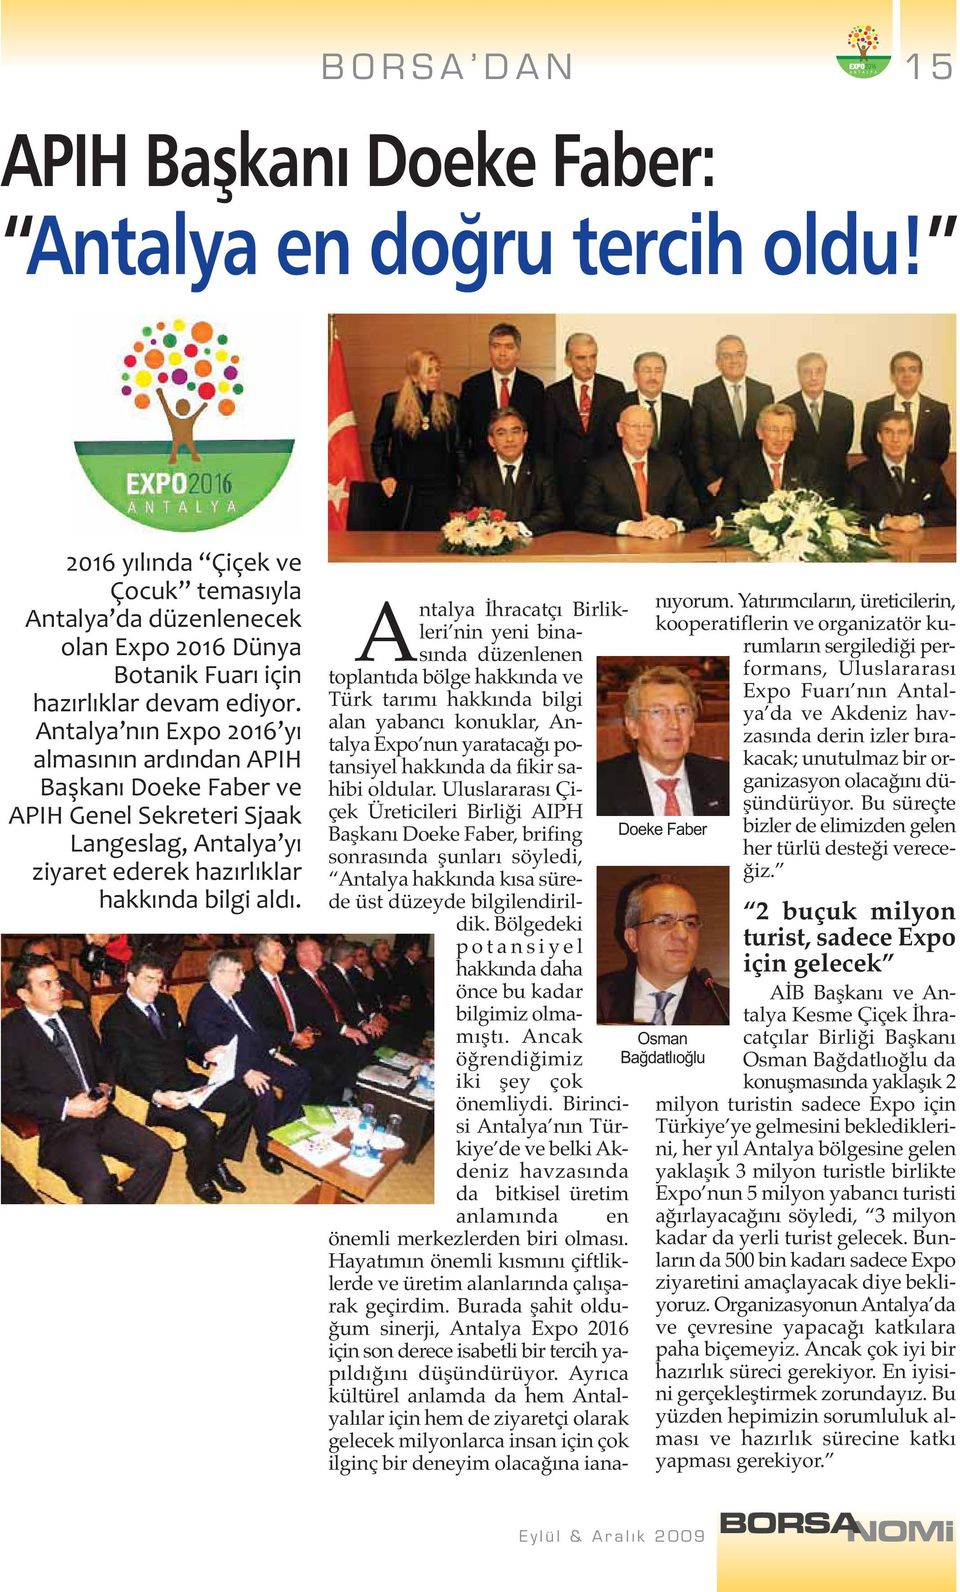 Antalya İhracatçı Birlikleri nin yeni binasında düzenlenen toplantıda bölge hakkında ve Türk tarımı hakkında bilgi alan yabancı konuklar, Antalya Expo nun yaratacağı potansiyel hakkında da fikir